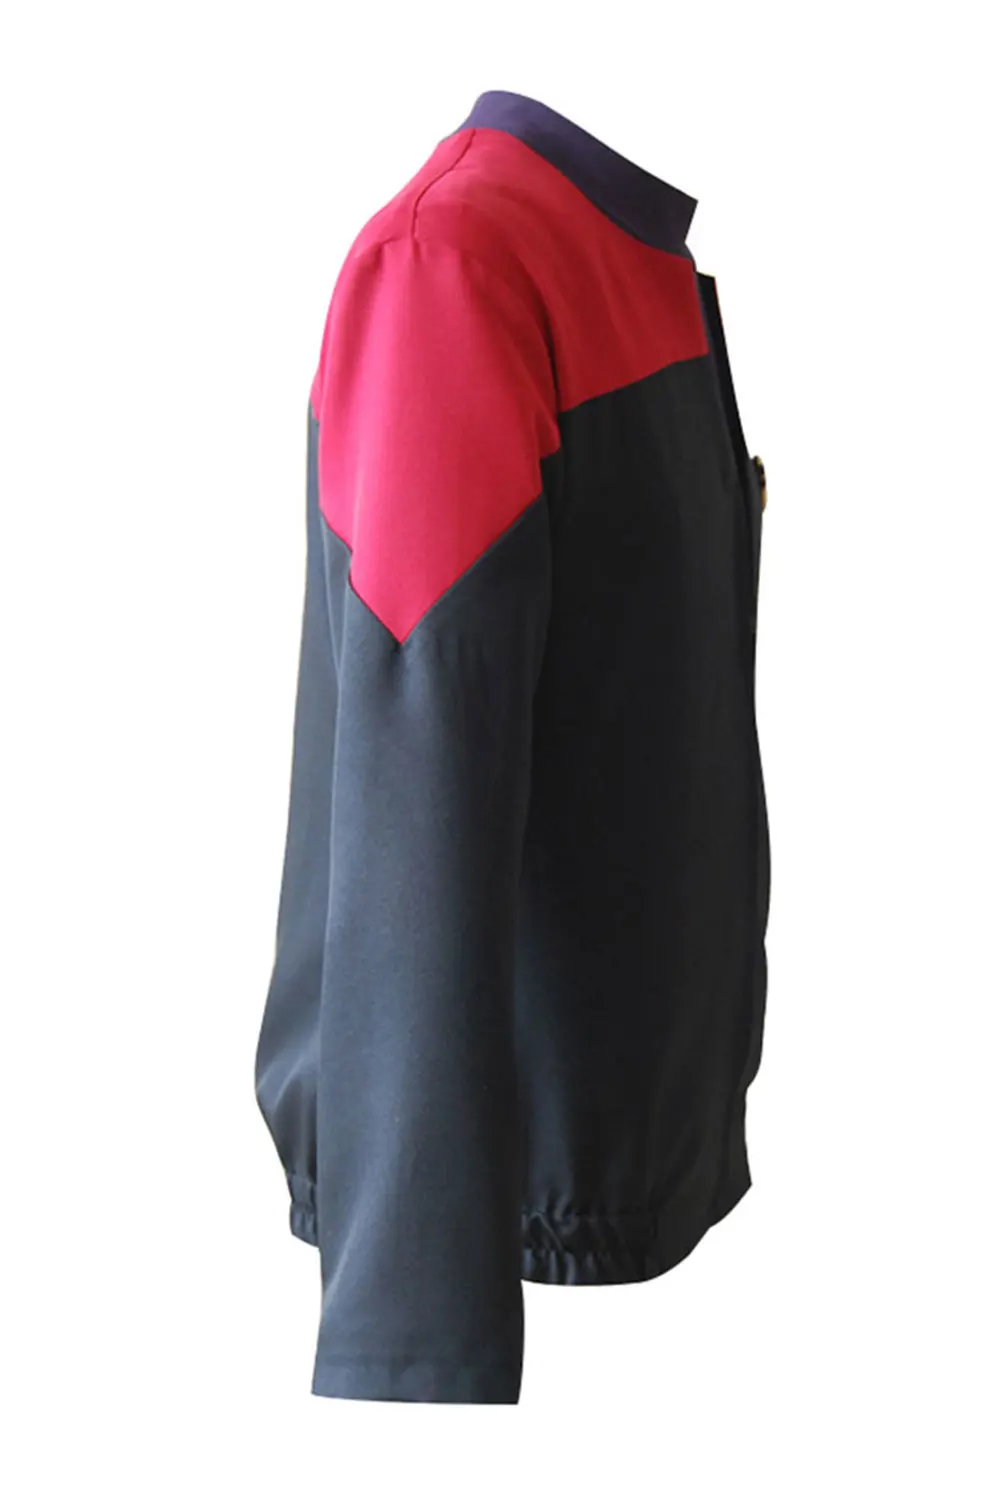 Звездный Косплей Trek Voyager команда косплей костюм Красная куртка рубашка значок костюм для Хэллоуина карнавальный костюм